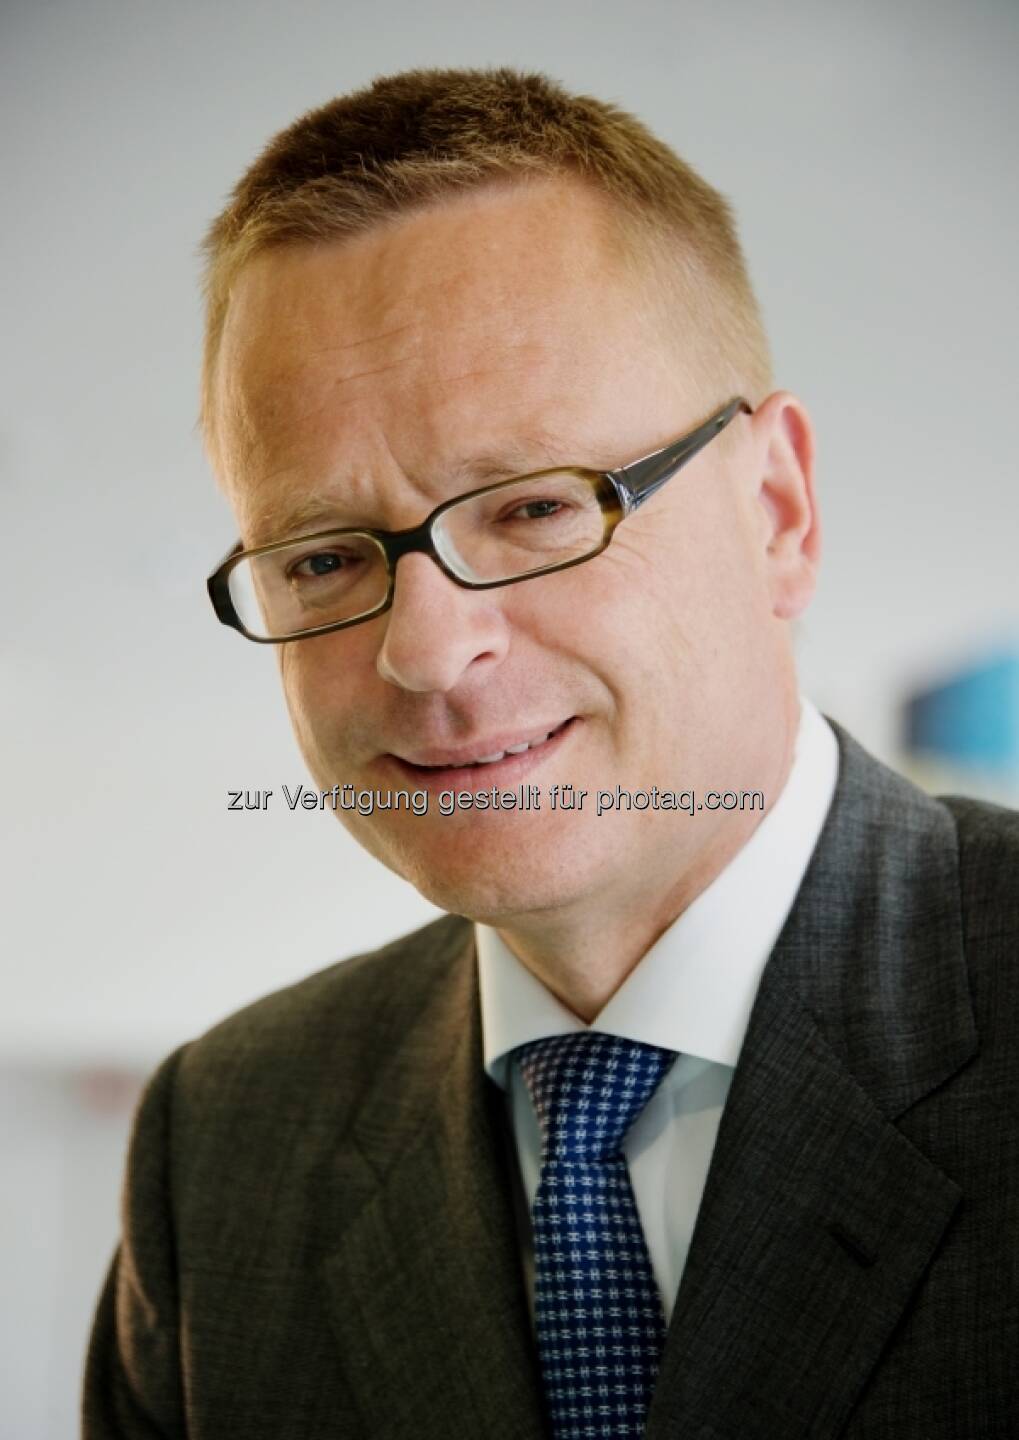 Richard Stralz, Ex-Vorstand Semperit (24. April) - finanzmarktfoto.at wünscht alles Gute!